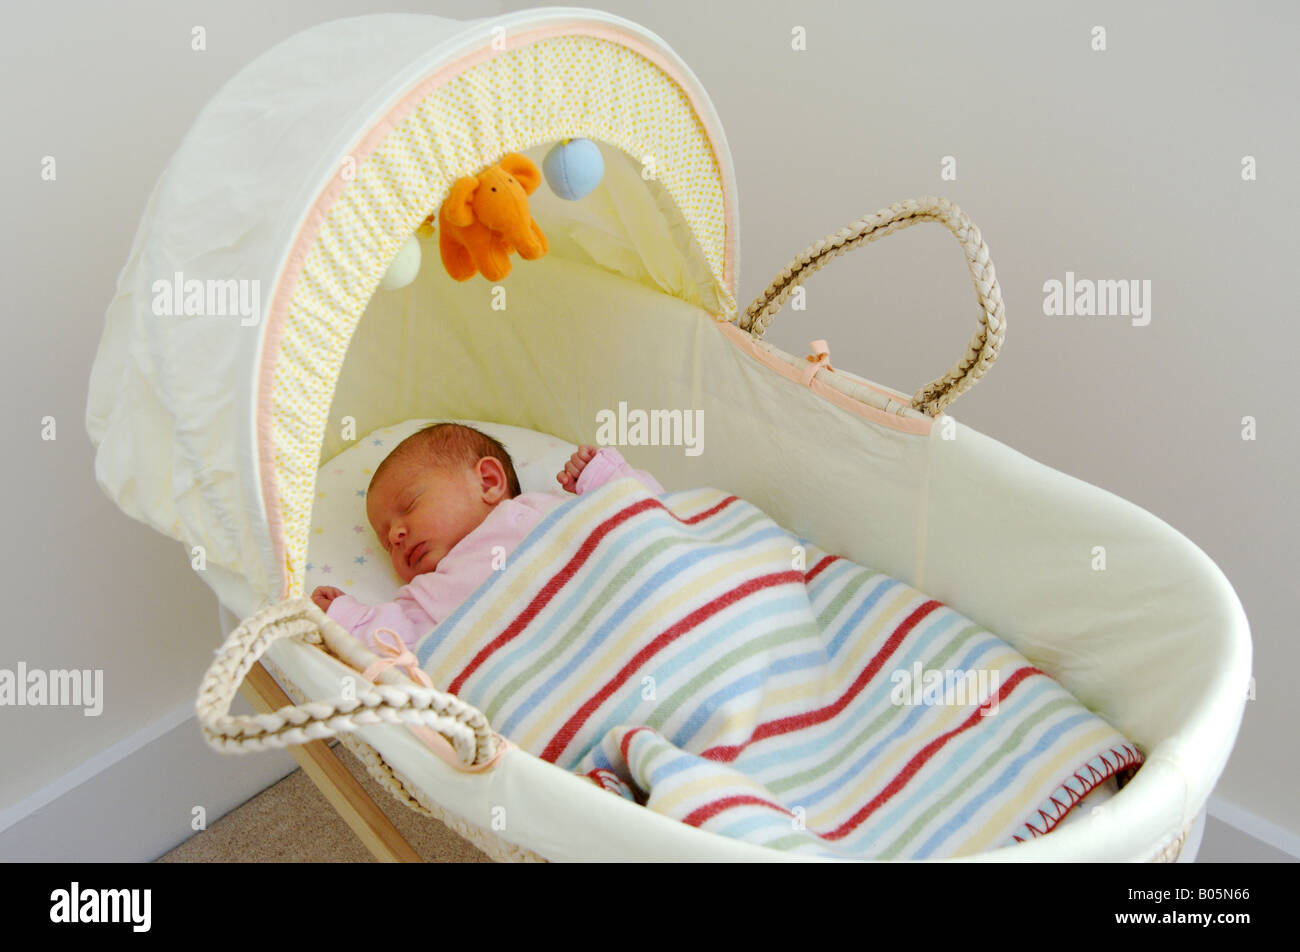 Bébé nouveau-né dans la région de Moses basket Photo Stock - Alamy